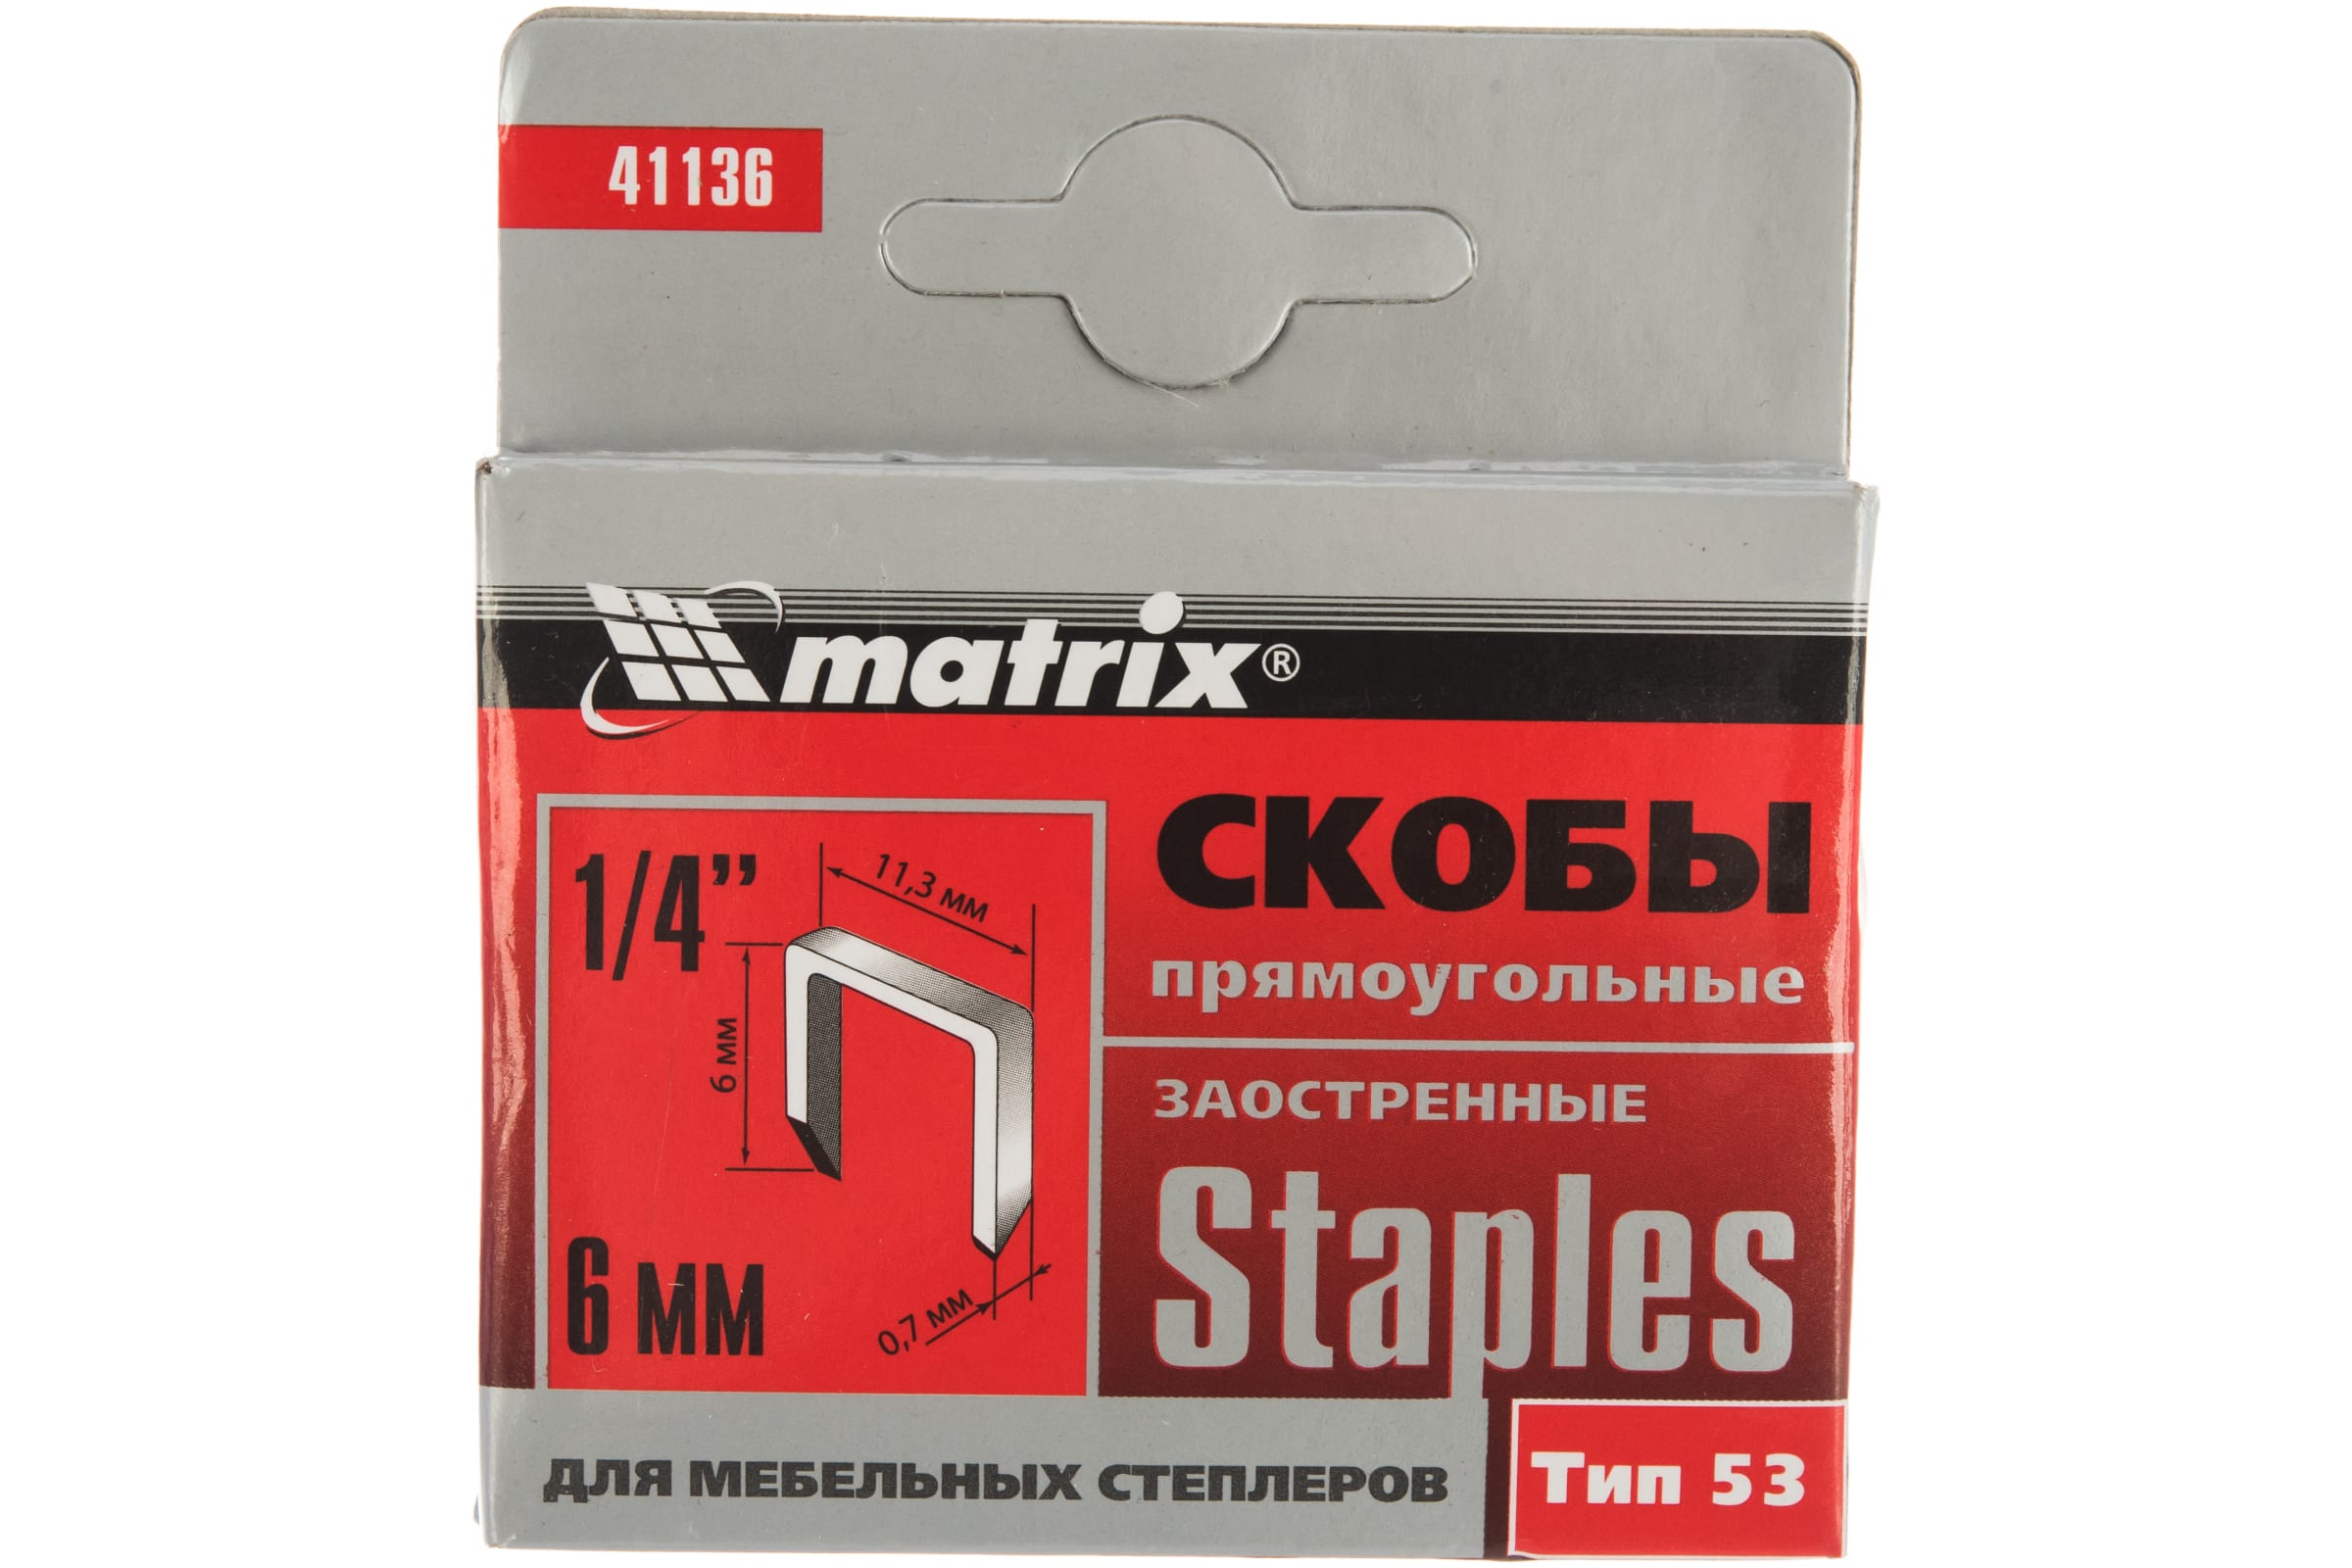 Скобы для электростеплера MATRIX 41136 скобы для электростеплера matrix 41136